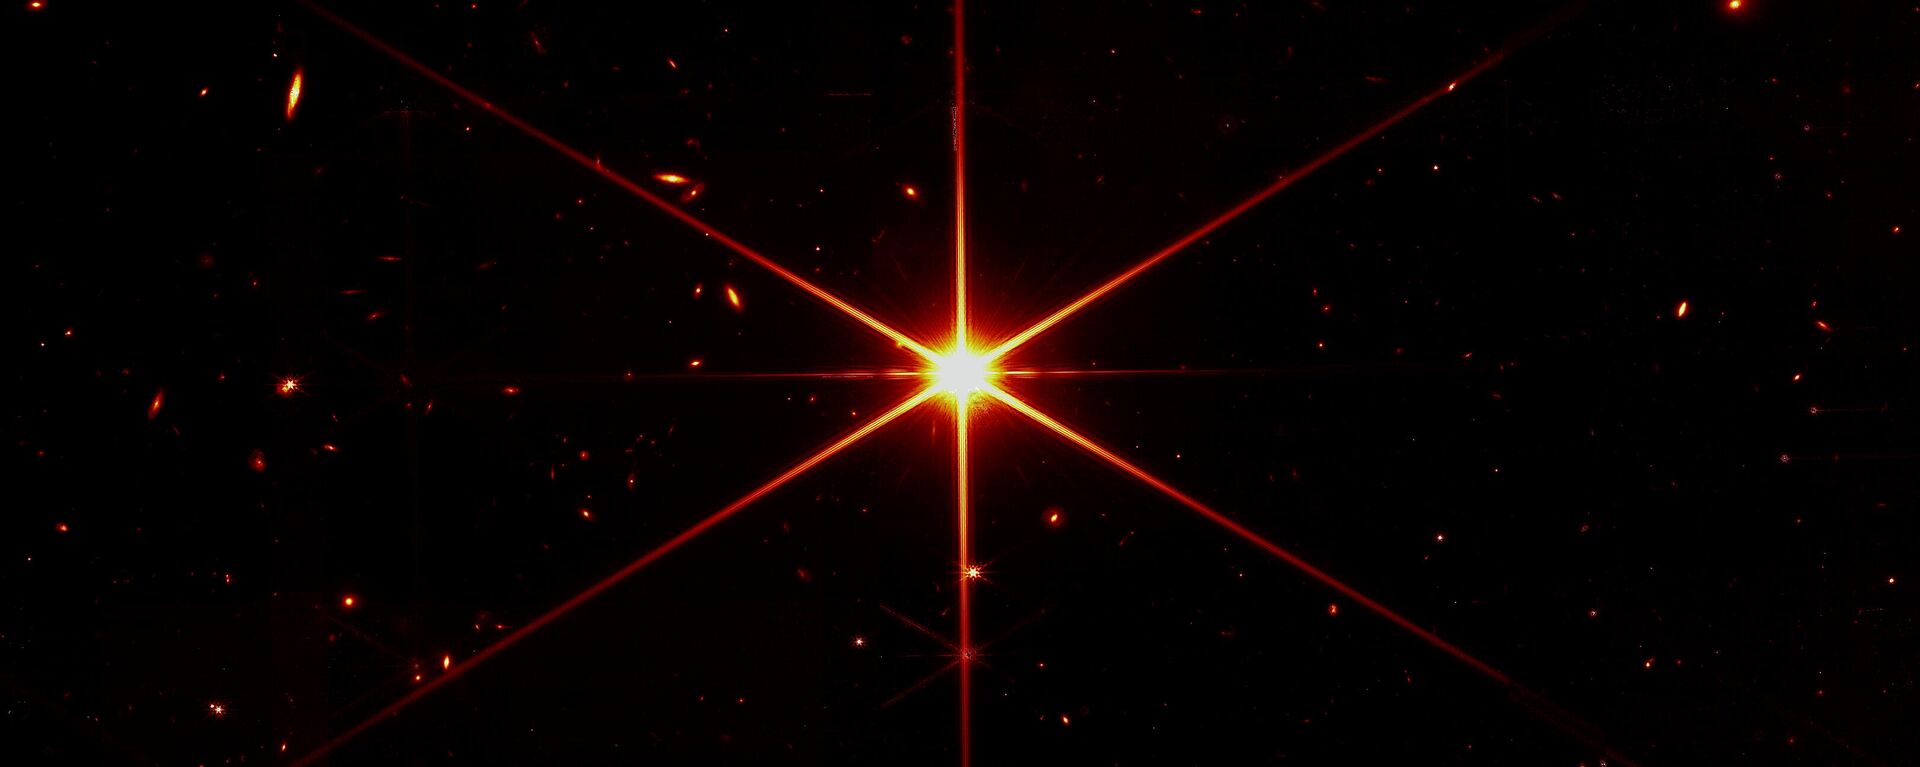 Imagen de evaluación de alineamiento del telescopio James Webb - Sputnik Mundo, 1920, 17.03.2022